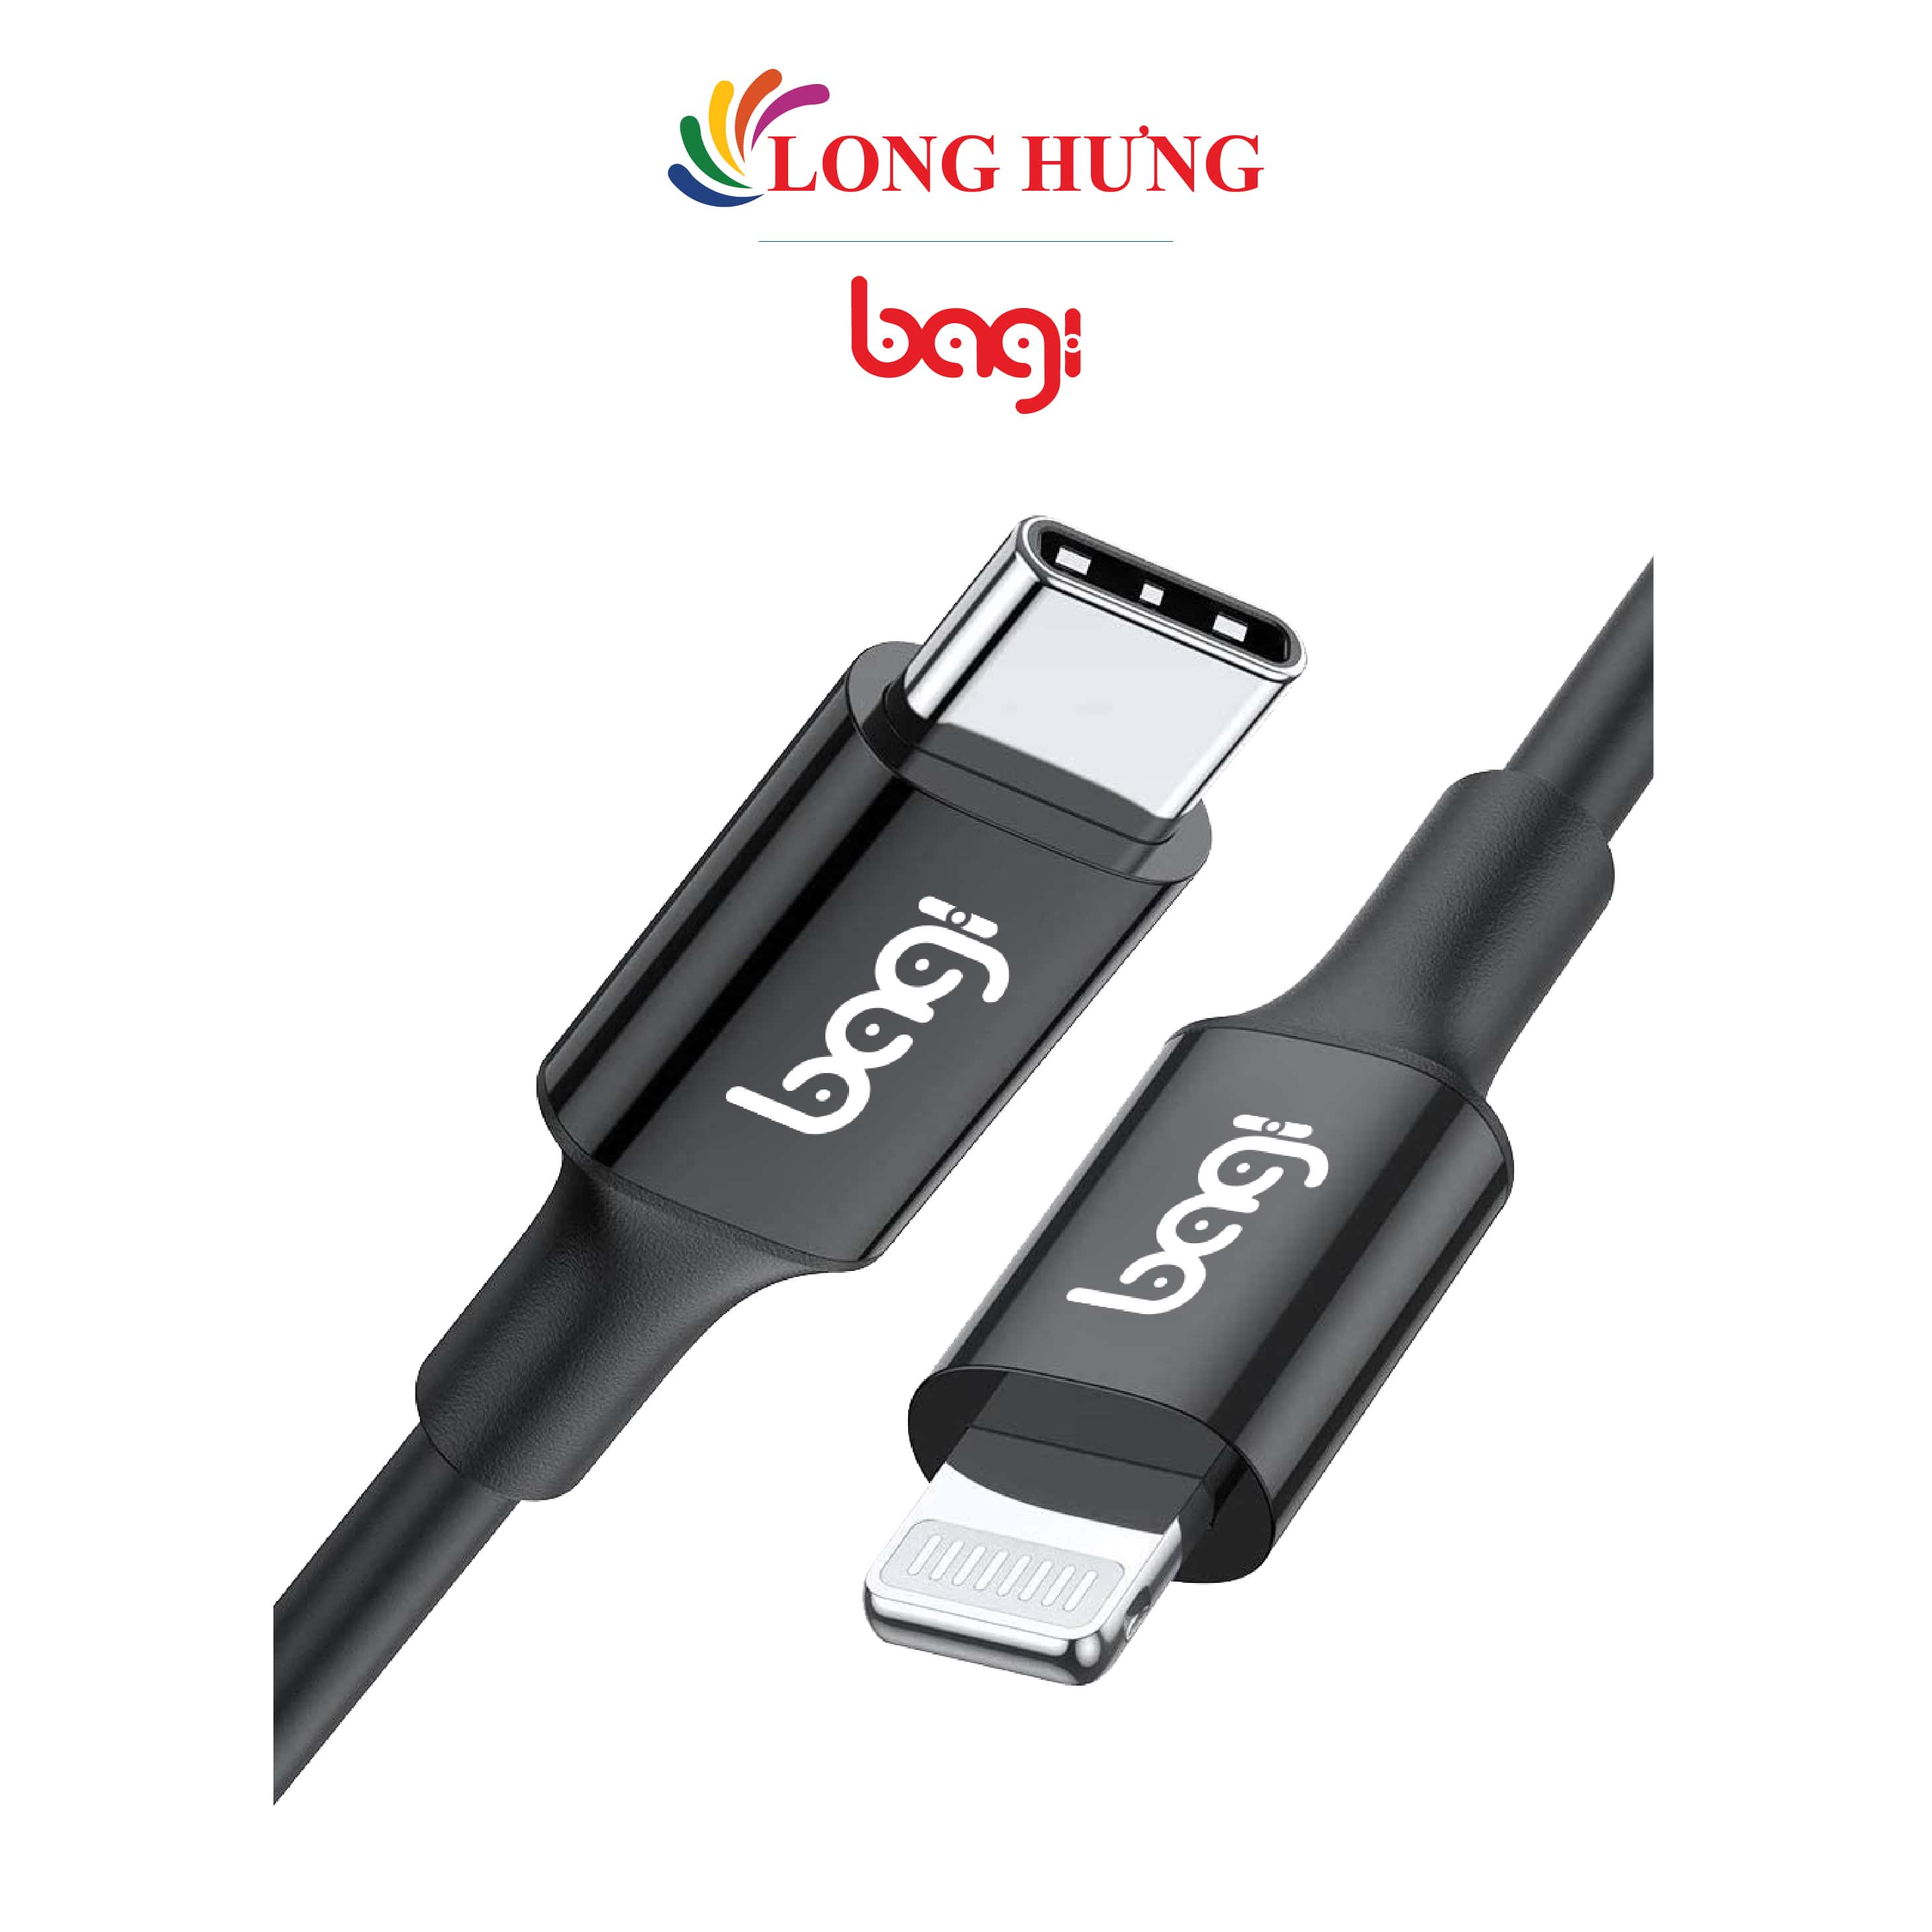 Cáp USB Type-C 3.1 to Lightning Bagi 1m PD-I100 - Hàng chính hãng